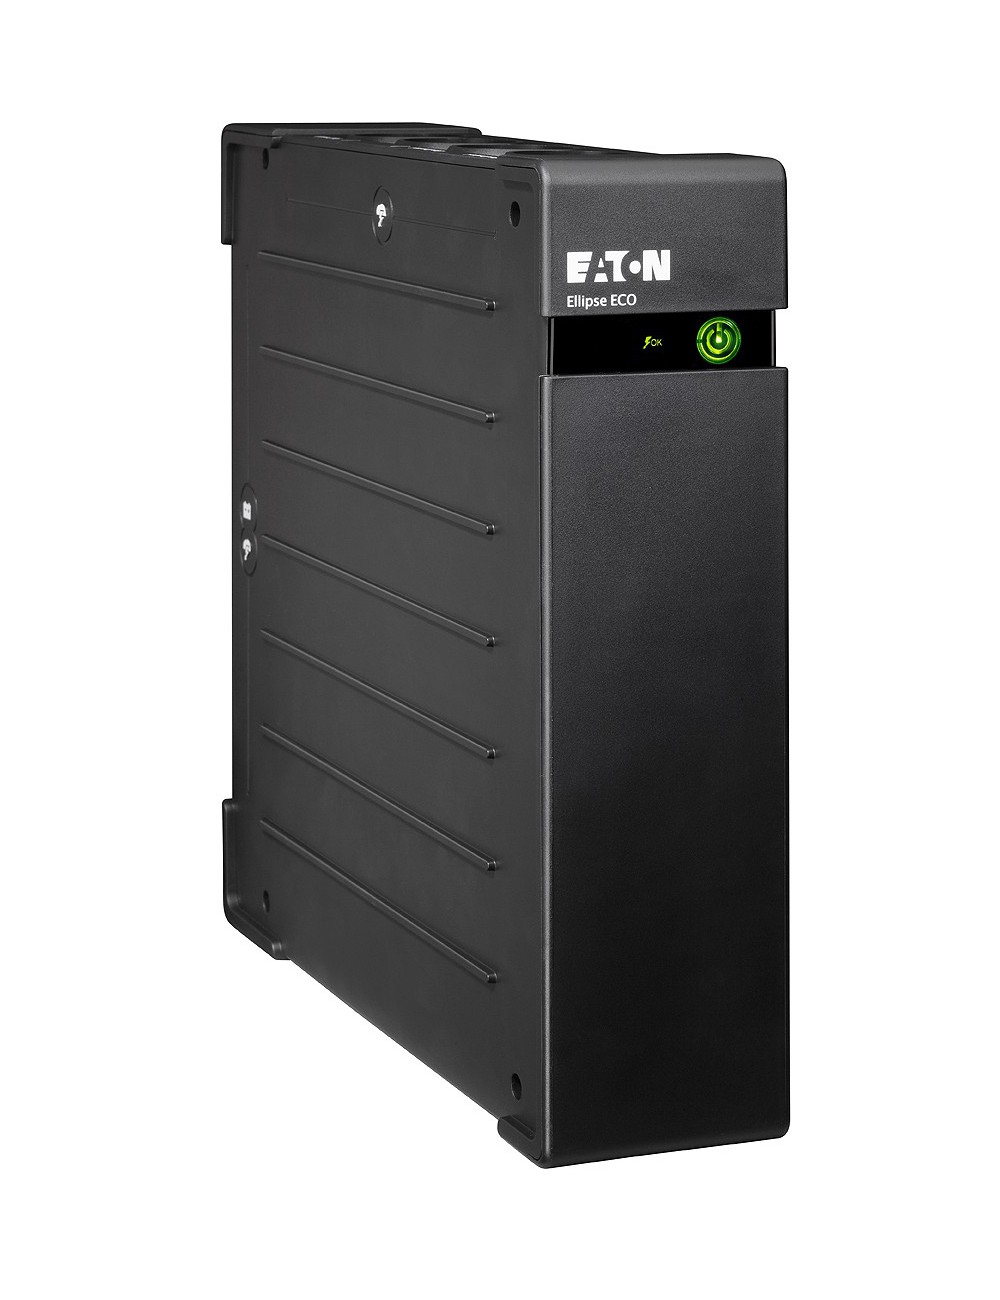 Eaton Ellipse ECO 1600 USB DIN sistema de alimentación ininterrumpida (UPS) En espera (Fuera de línea) o Standby (Offline) 1,6